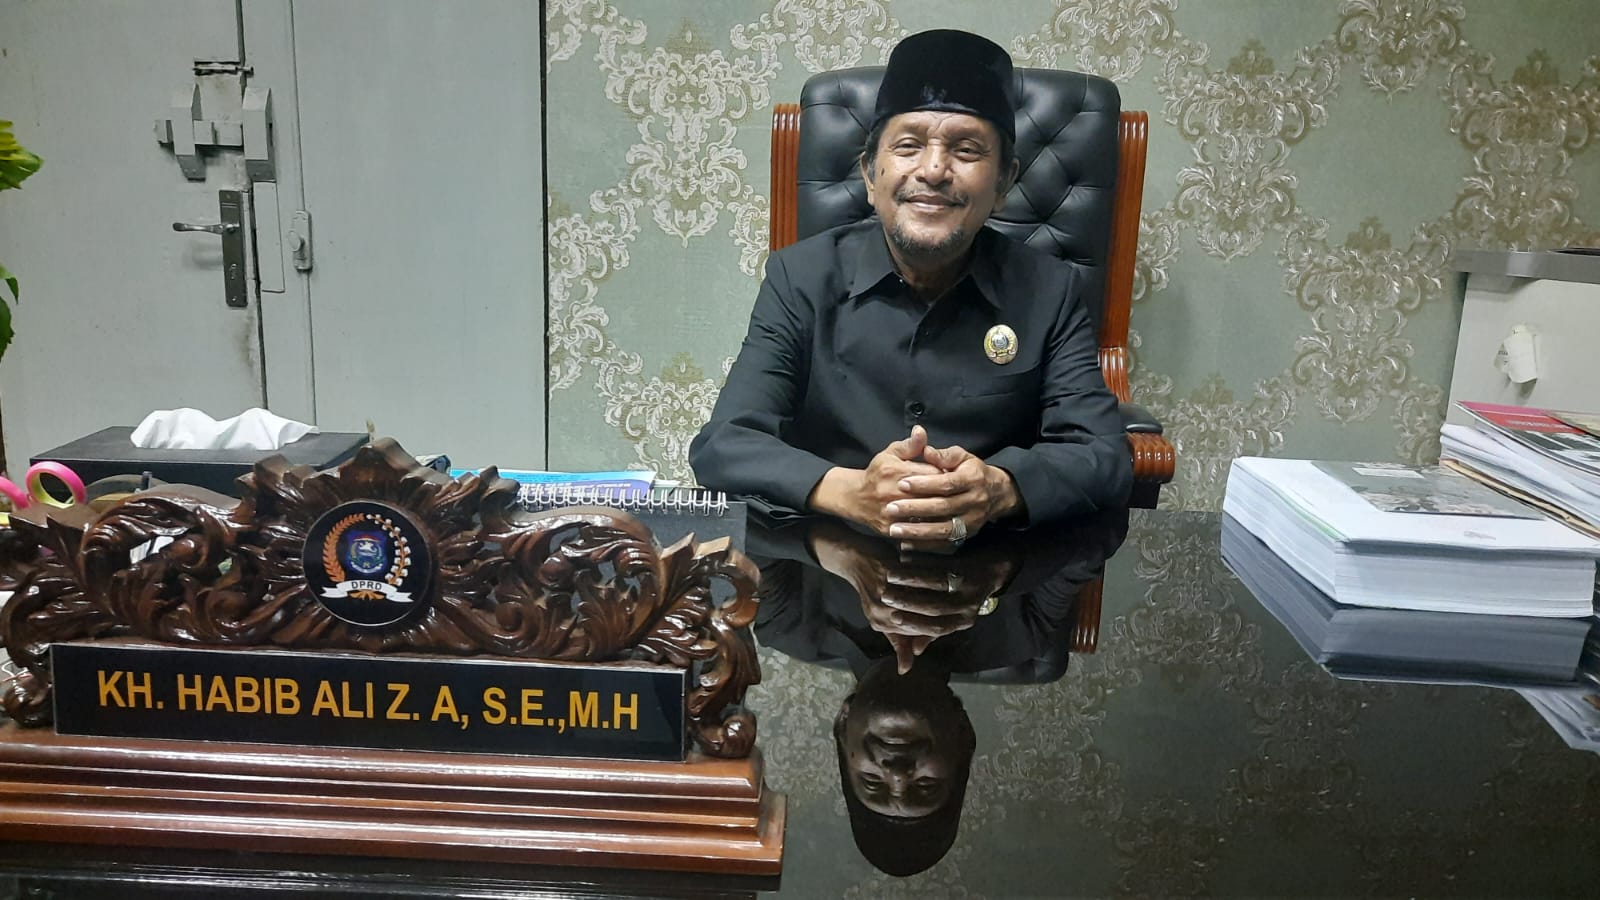 DPRD Kota Tegal Mulai Bahas RPJPD 2025-2045, Habib Ali: Harus Mengacu pada Provinsi